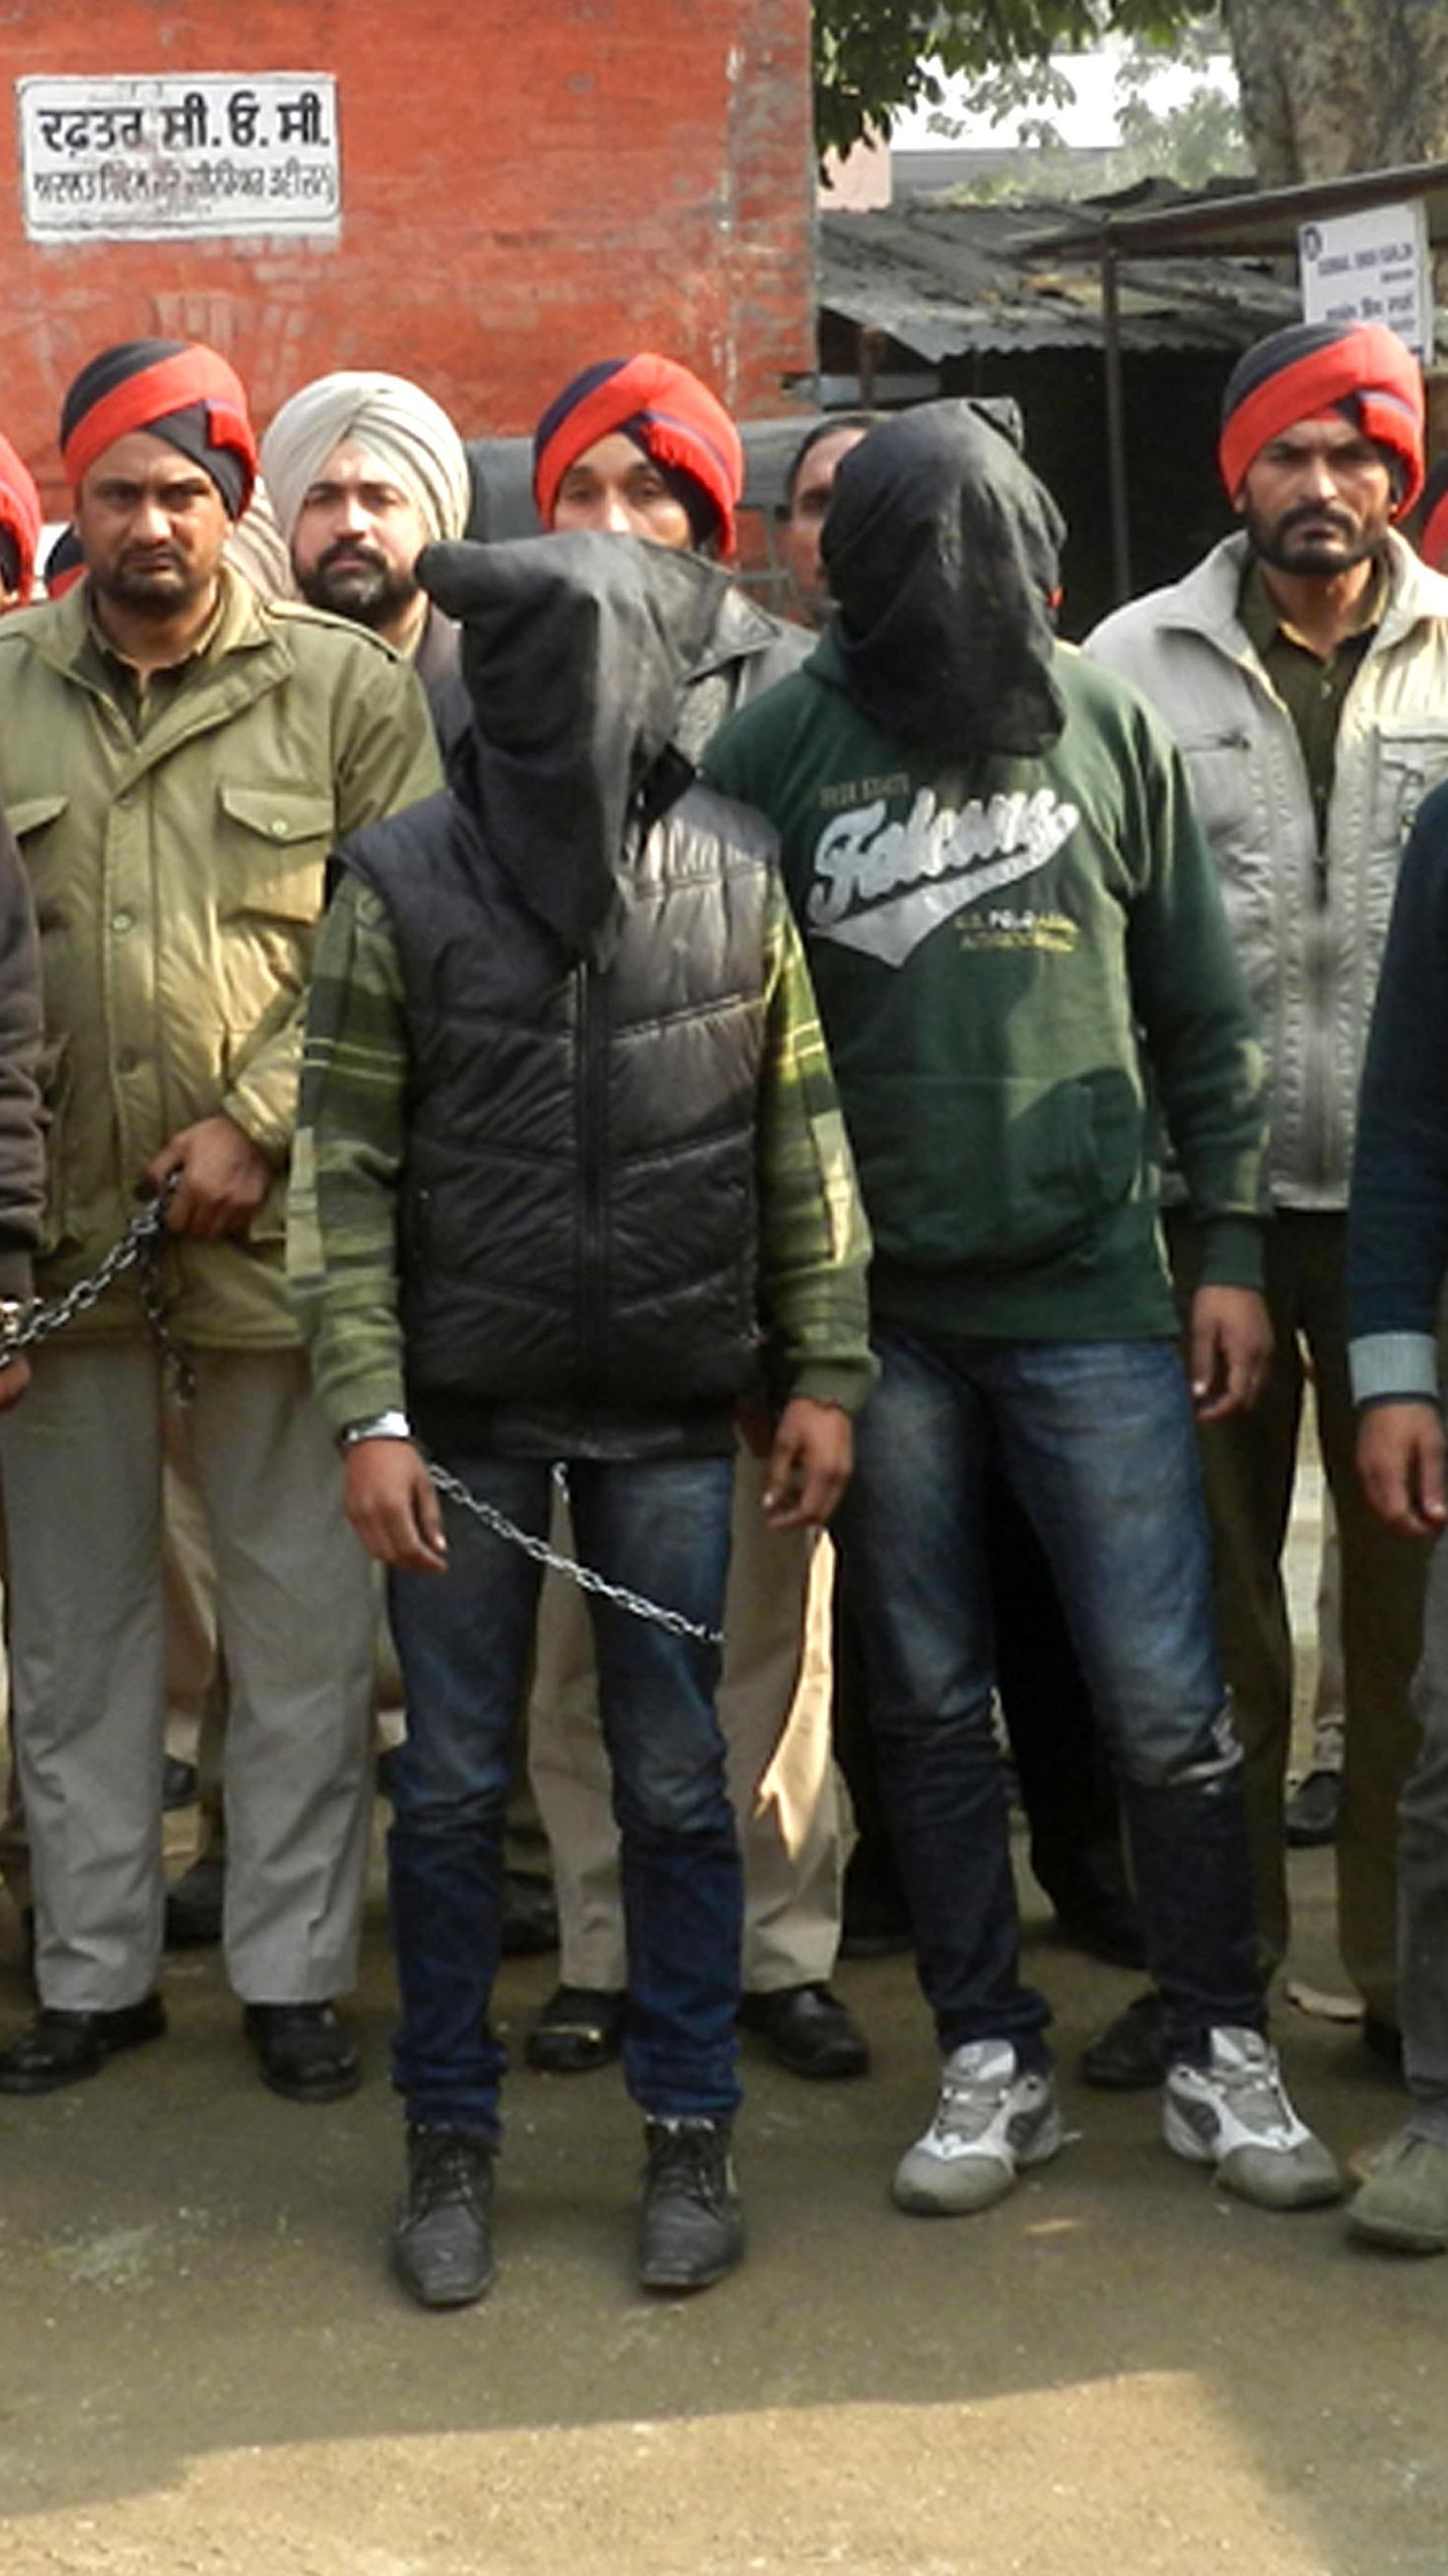 Police: 7 men gang rape bus passenger in India | CNN